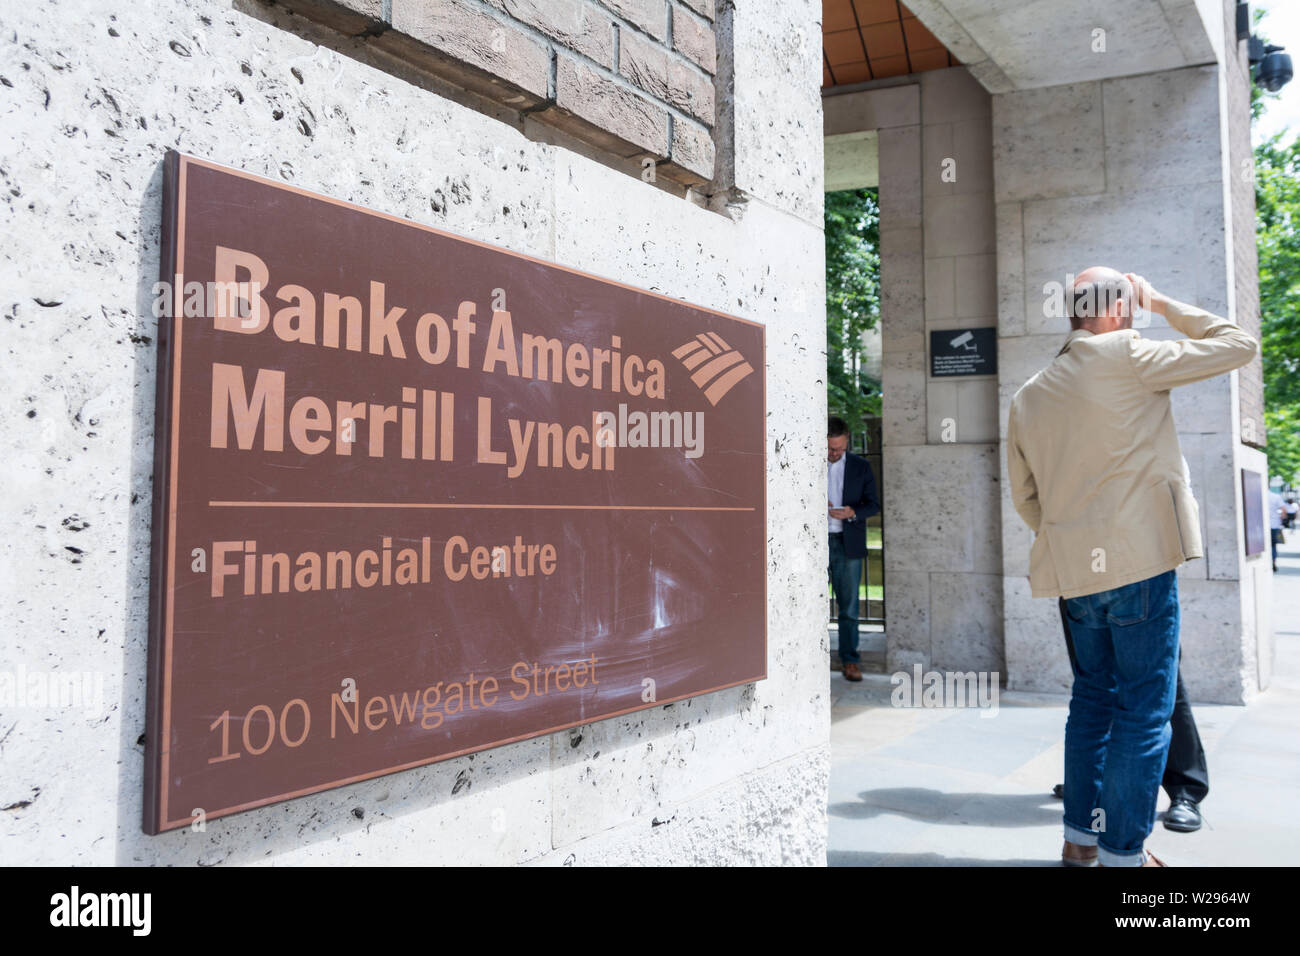 Un homme tenant son front à l'extérieur de la Bank of America, Merrill Lynch, Newgate Street, Farringdon, London EC1, UK Banque D'Images